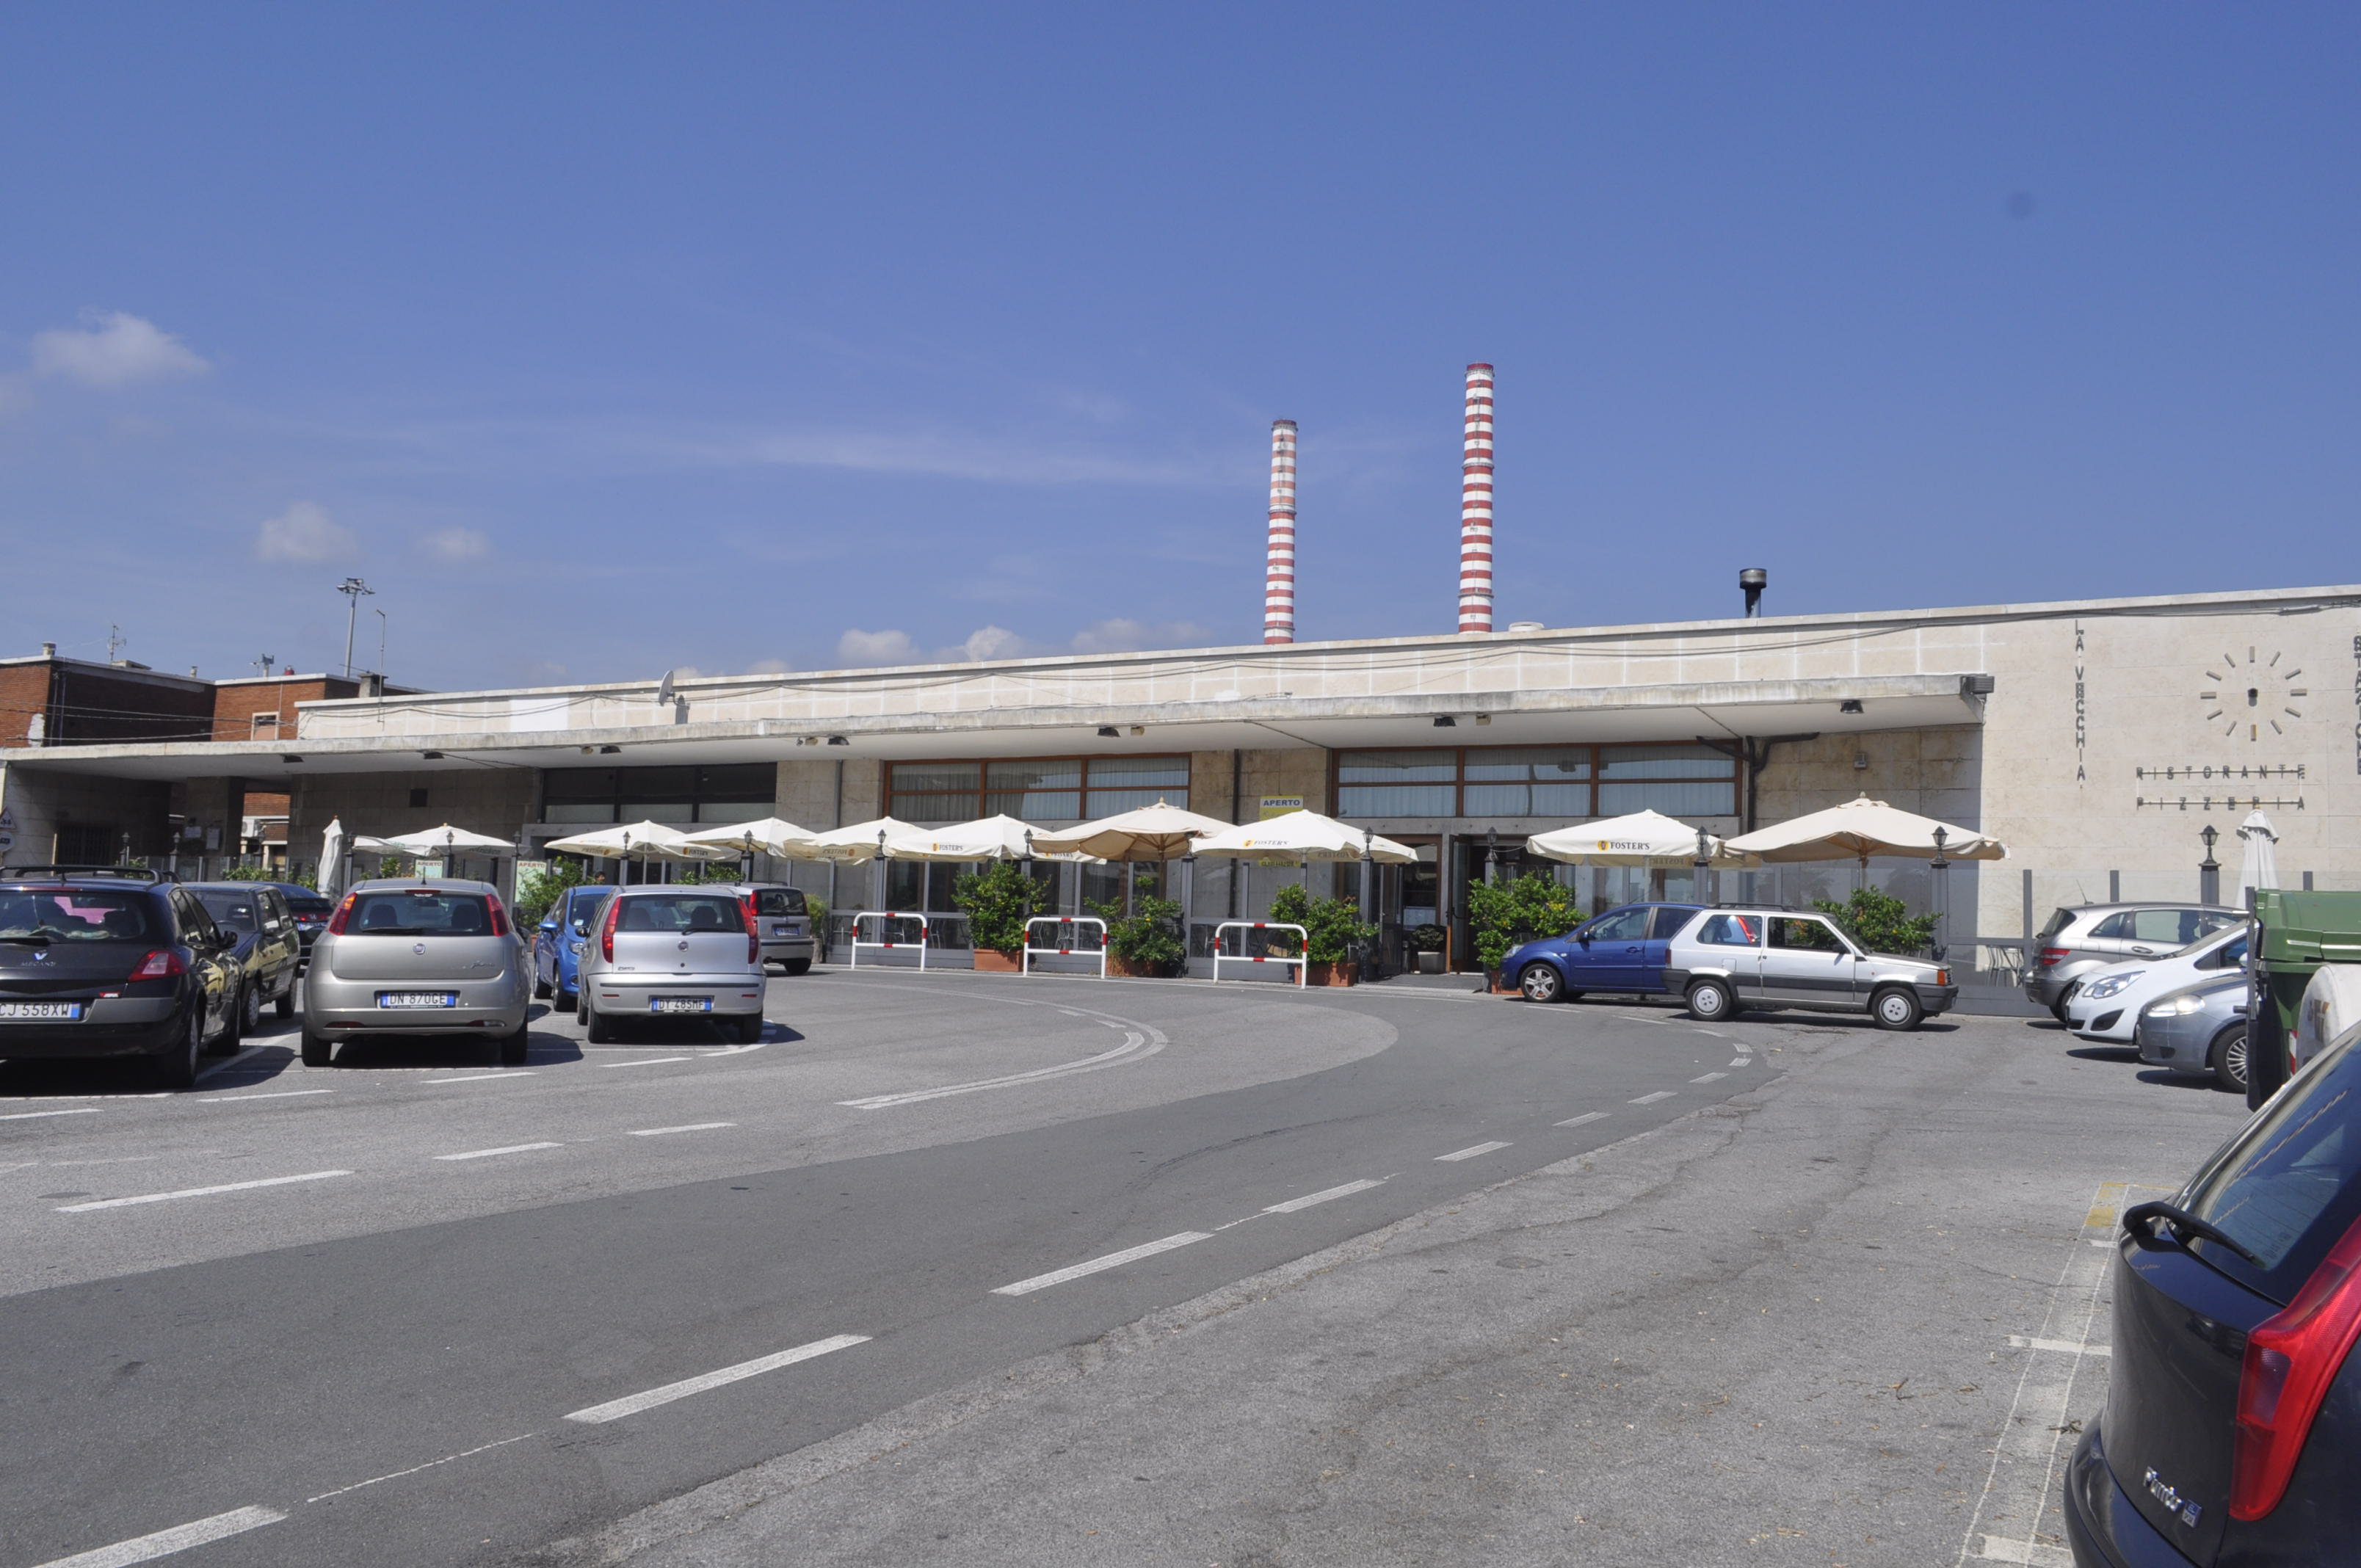 Stazione Ferroviaria Vado Ligure , oggi Stazione Ferroviaria Vado Ligure zona industriale - Vado Ligure , Savona - Arch. Roberto Narducci - 1938 - 42